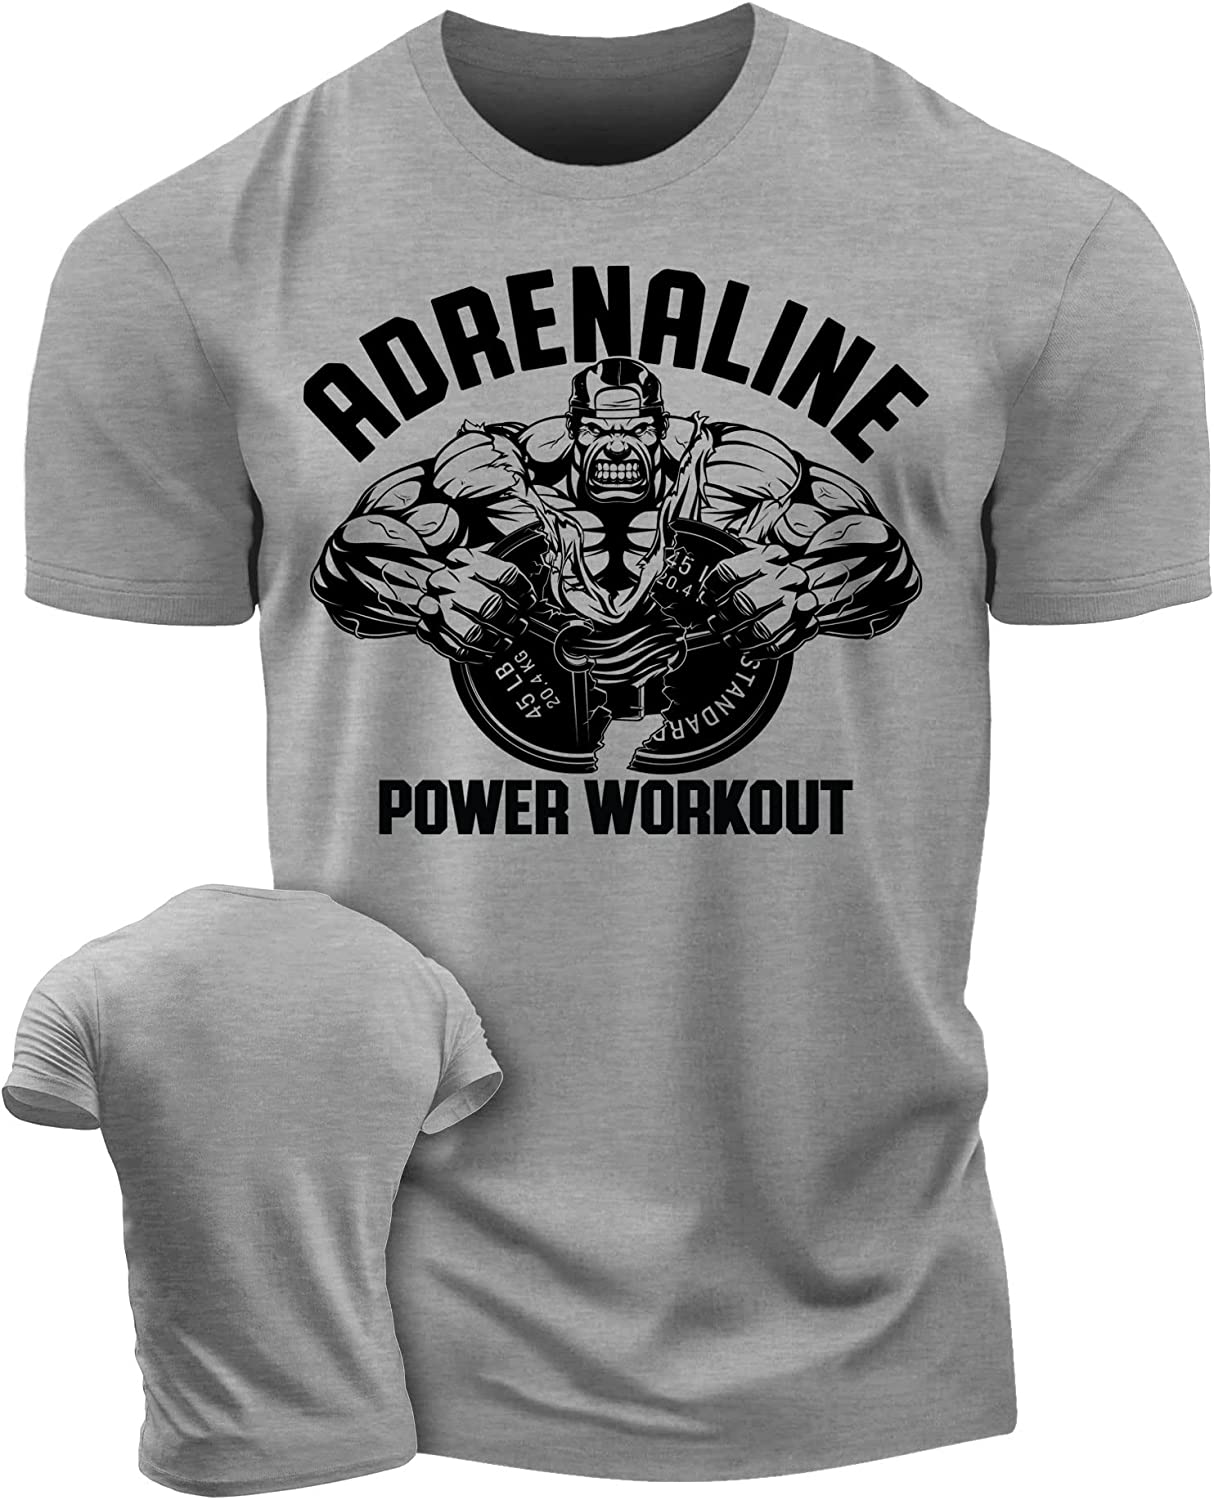 020. Adrenaline Workout T-Shirt